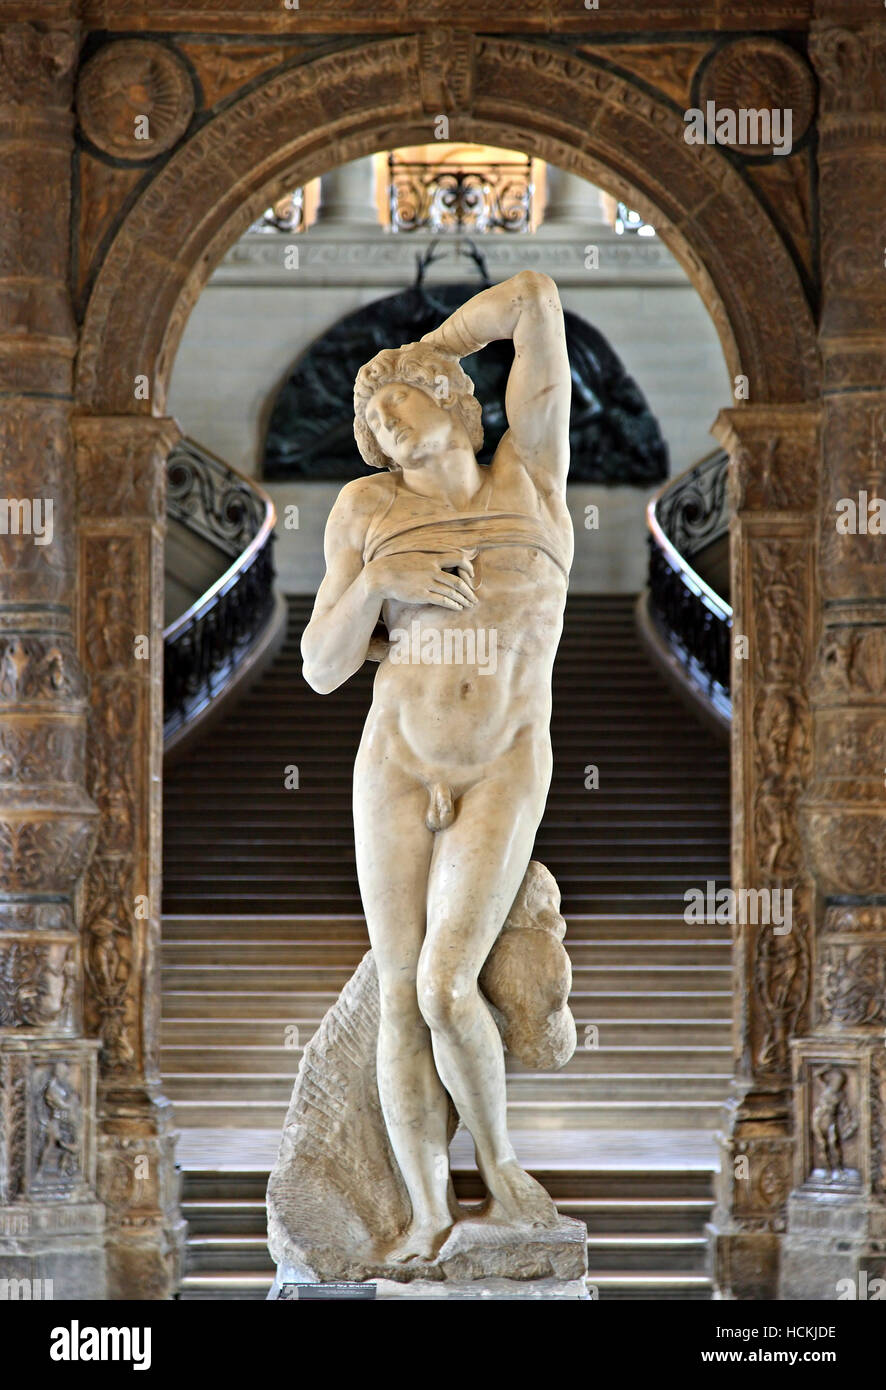 "Das sterben Sklaven" von Michelangelo, ein Meisterwerk der italienischen Renaissance, in Denon Flügel, Louvre-Museum, Paris, Frankreich. Stockfoto